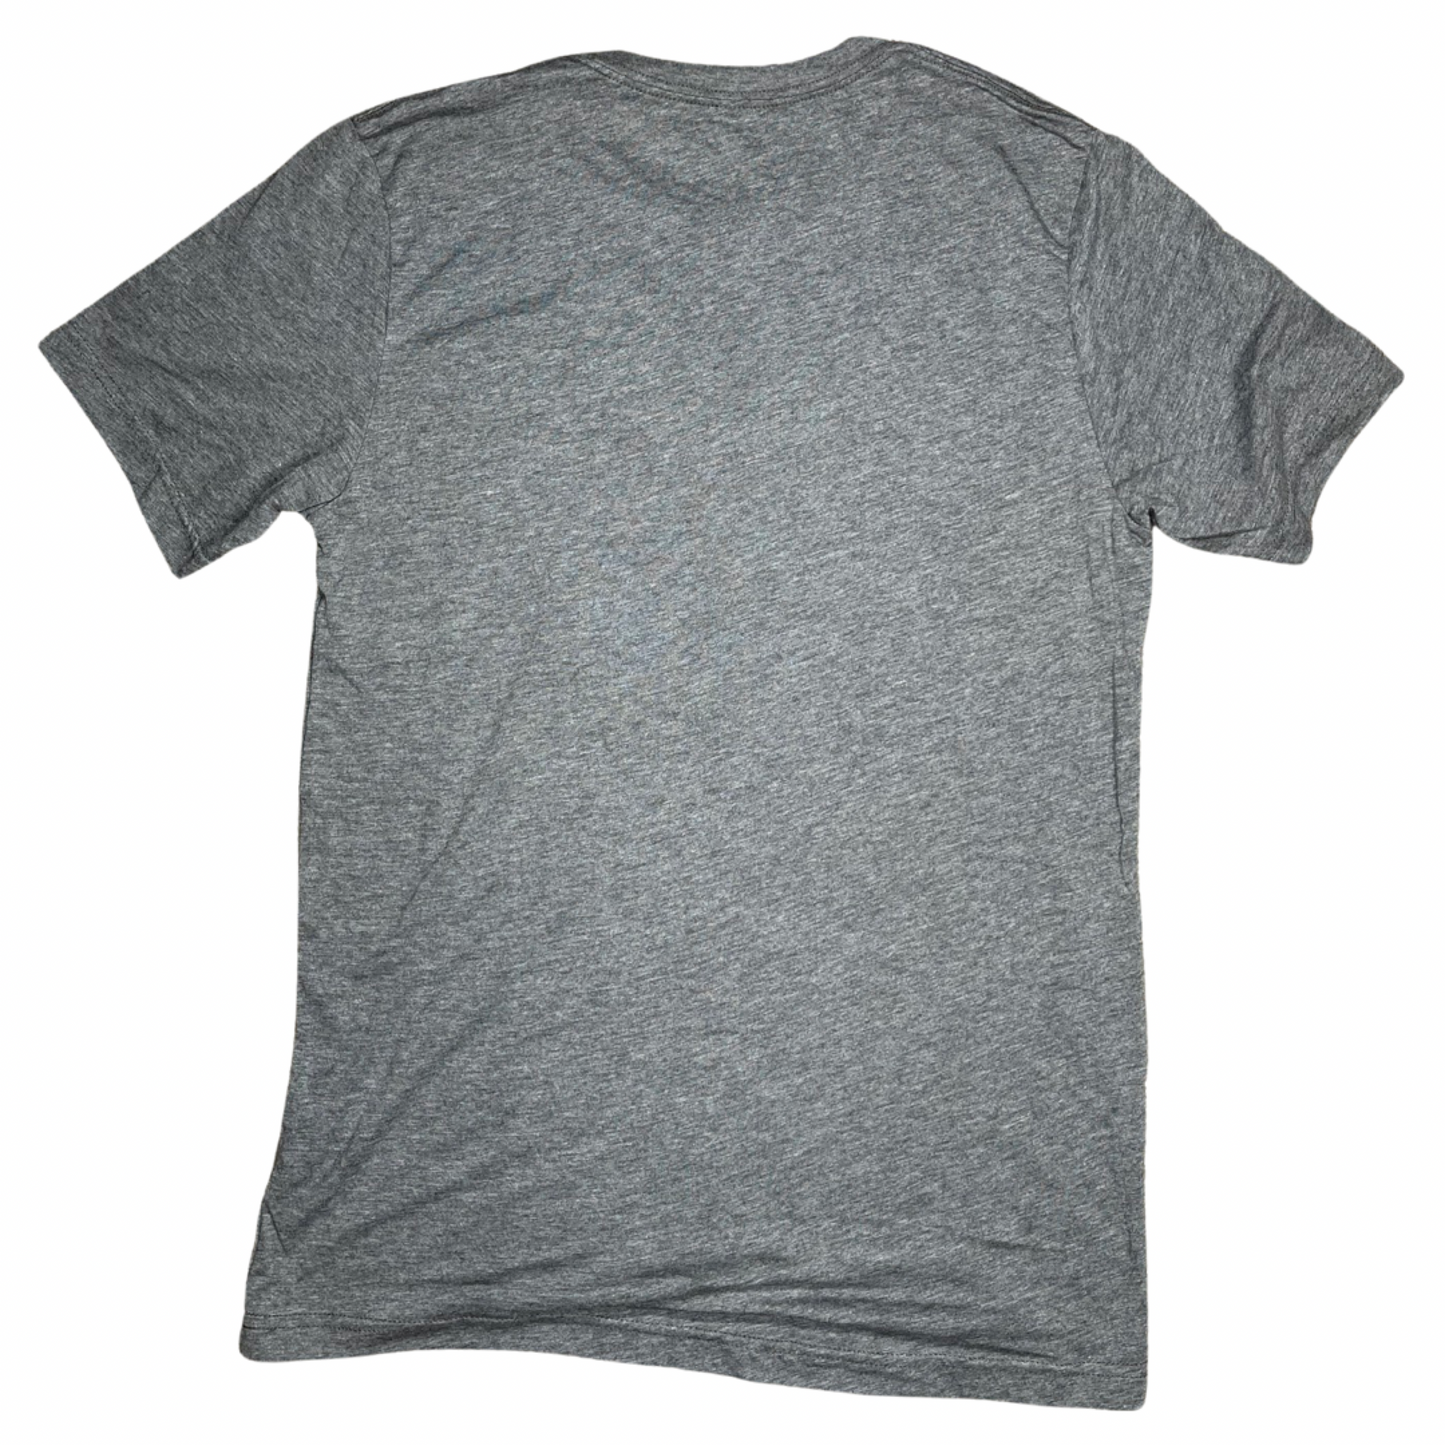 Vixere Vintage Logo Triblend Unisex T-Shirt